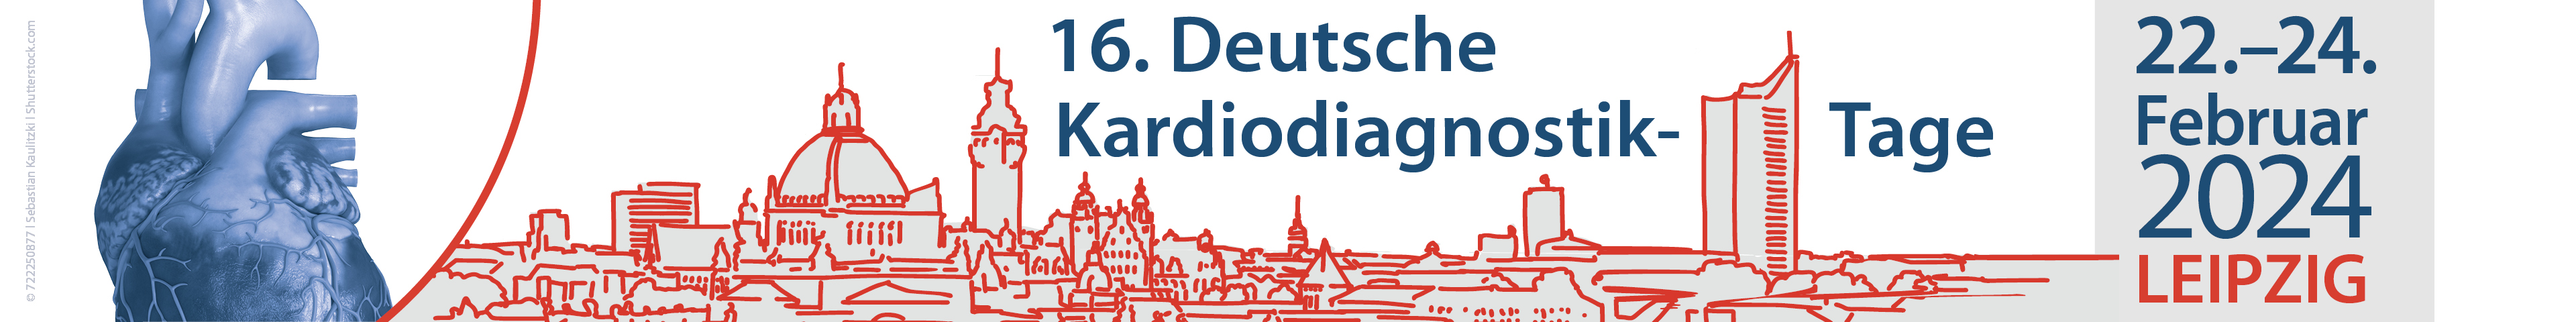 Banner 15. Deutschen Kardiodiagnostik-Tage